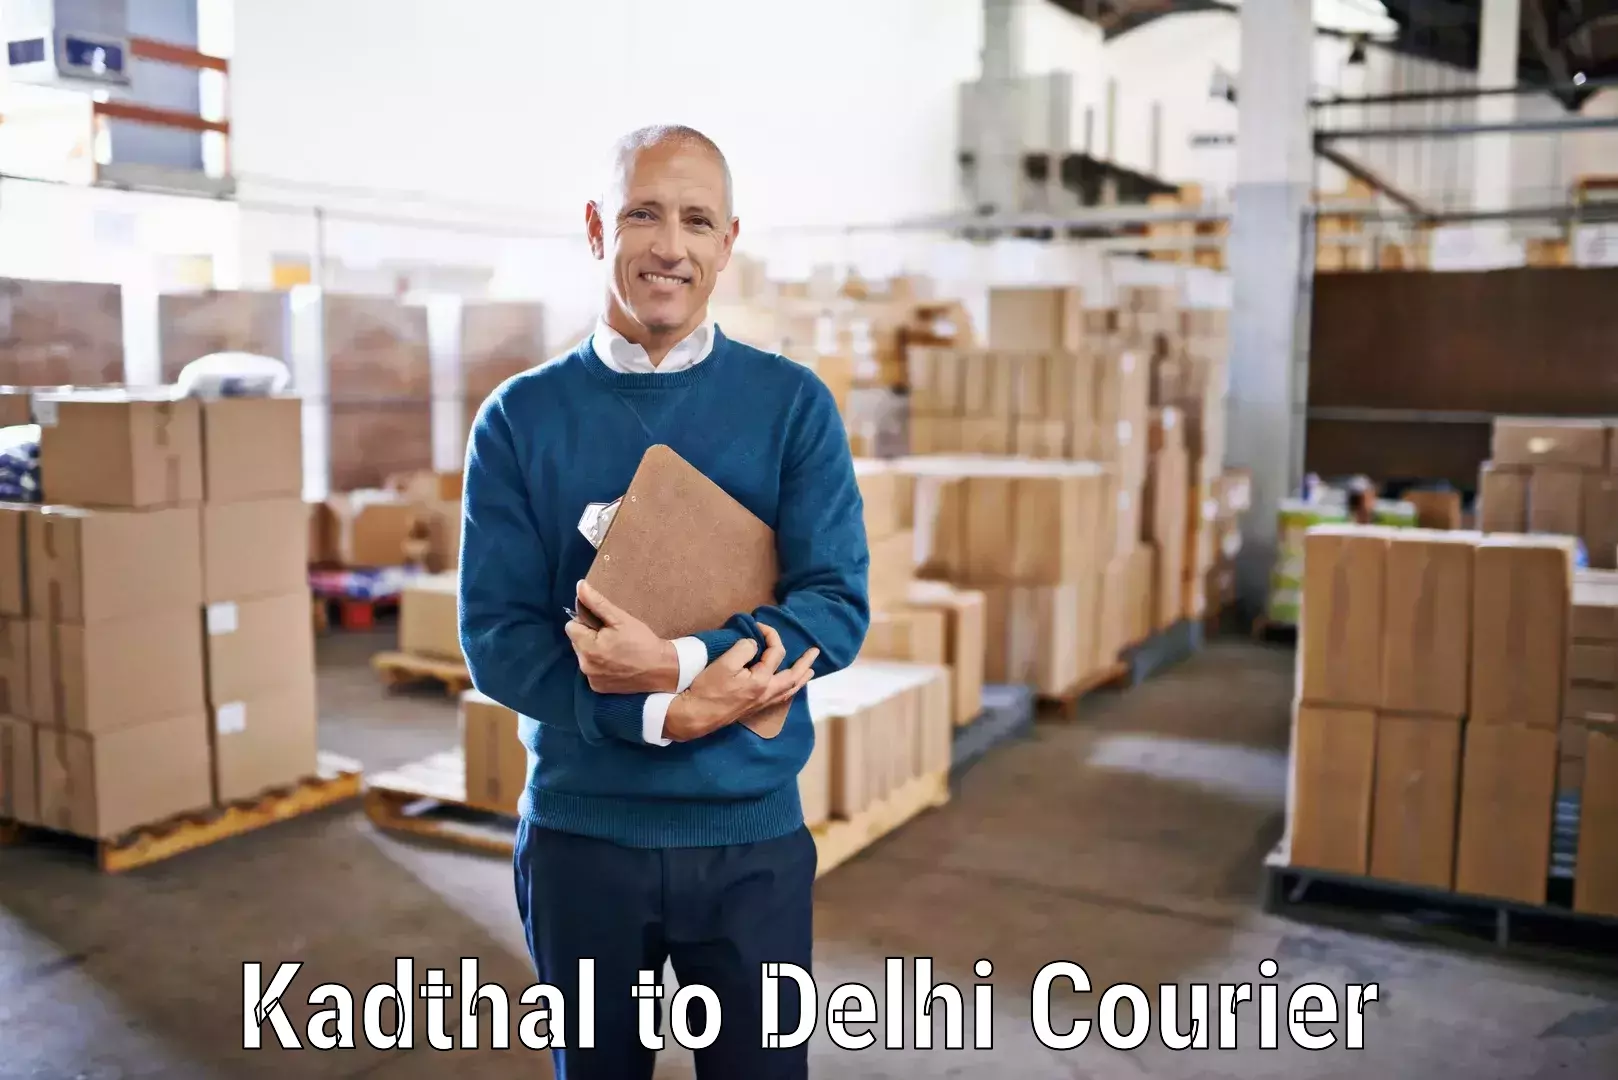 International parcel service Kadthal to Jhilmil